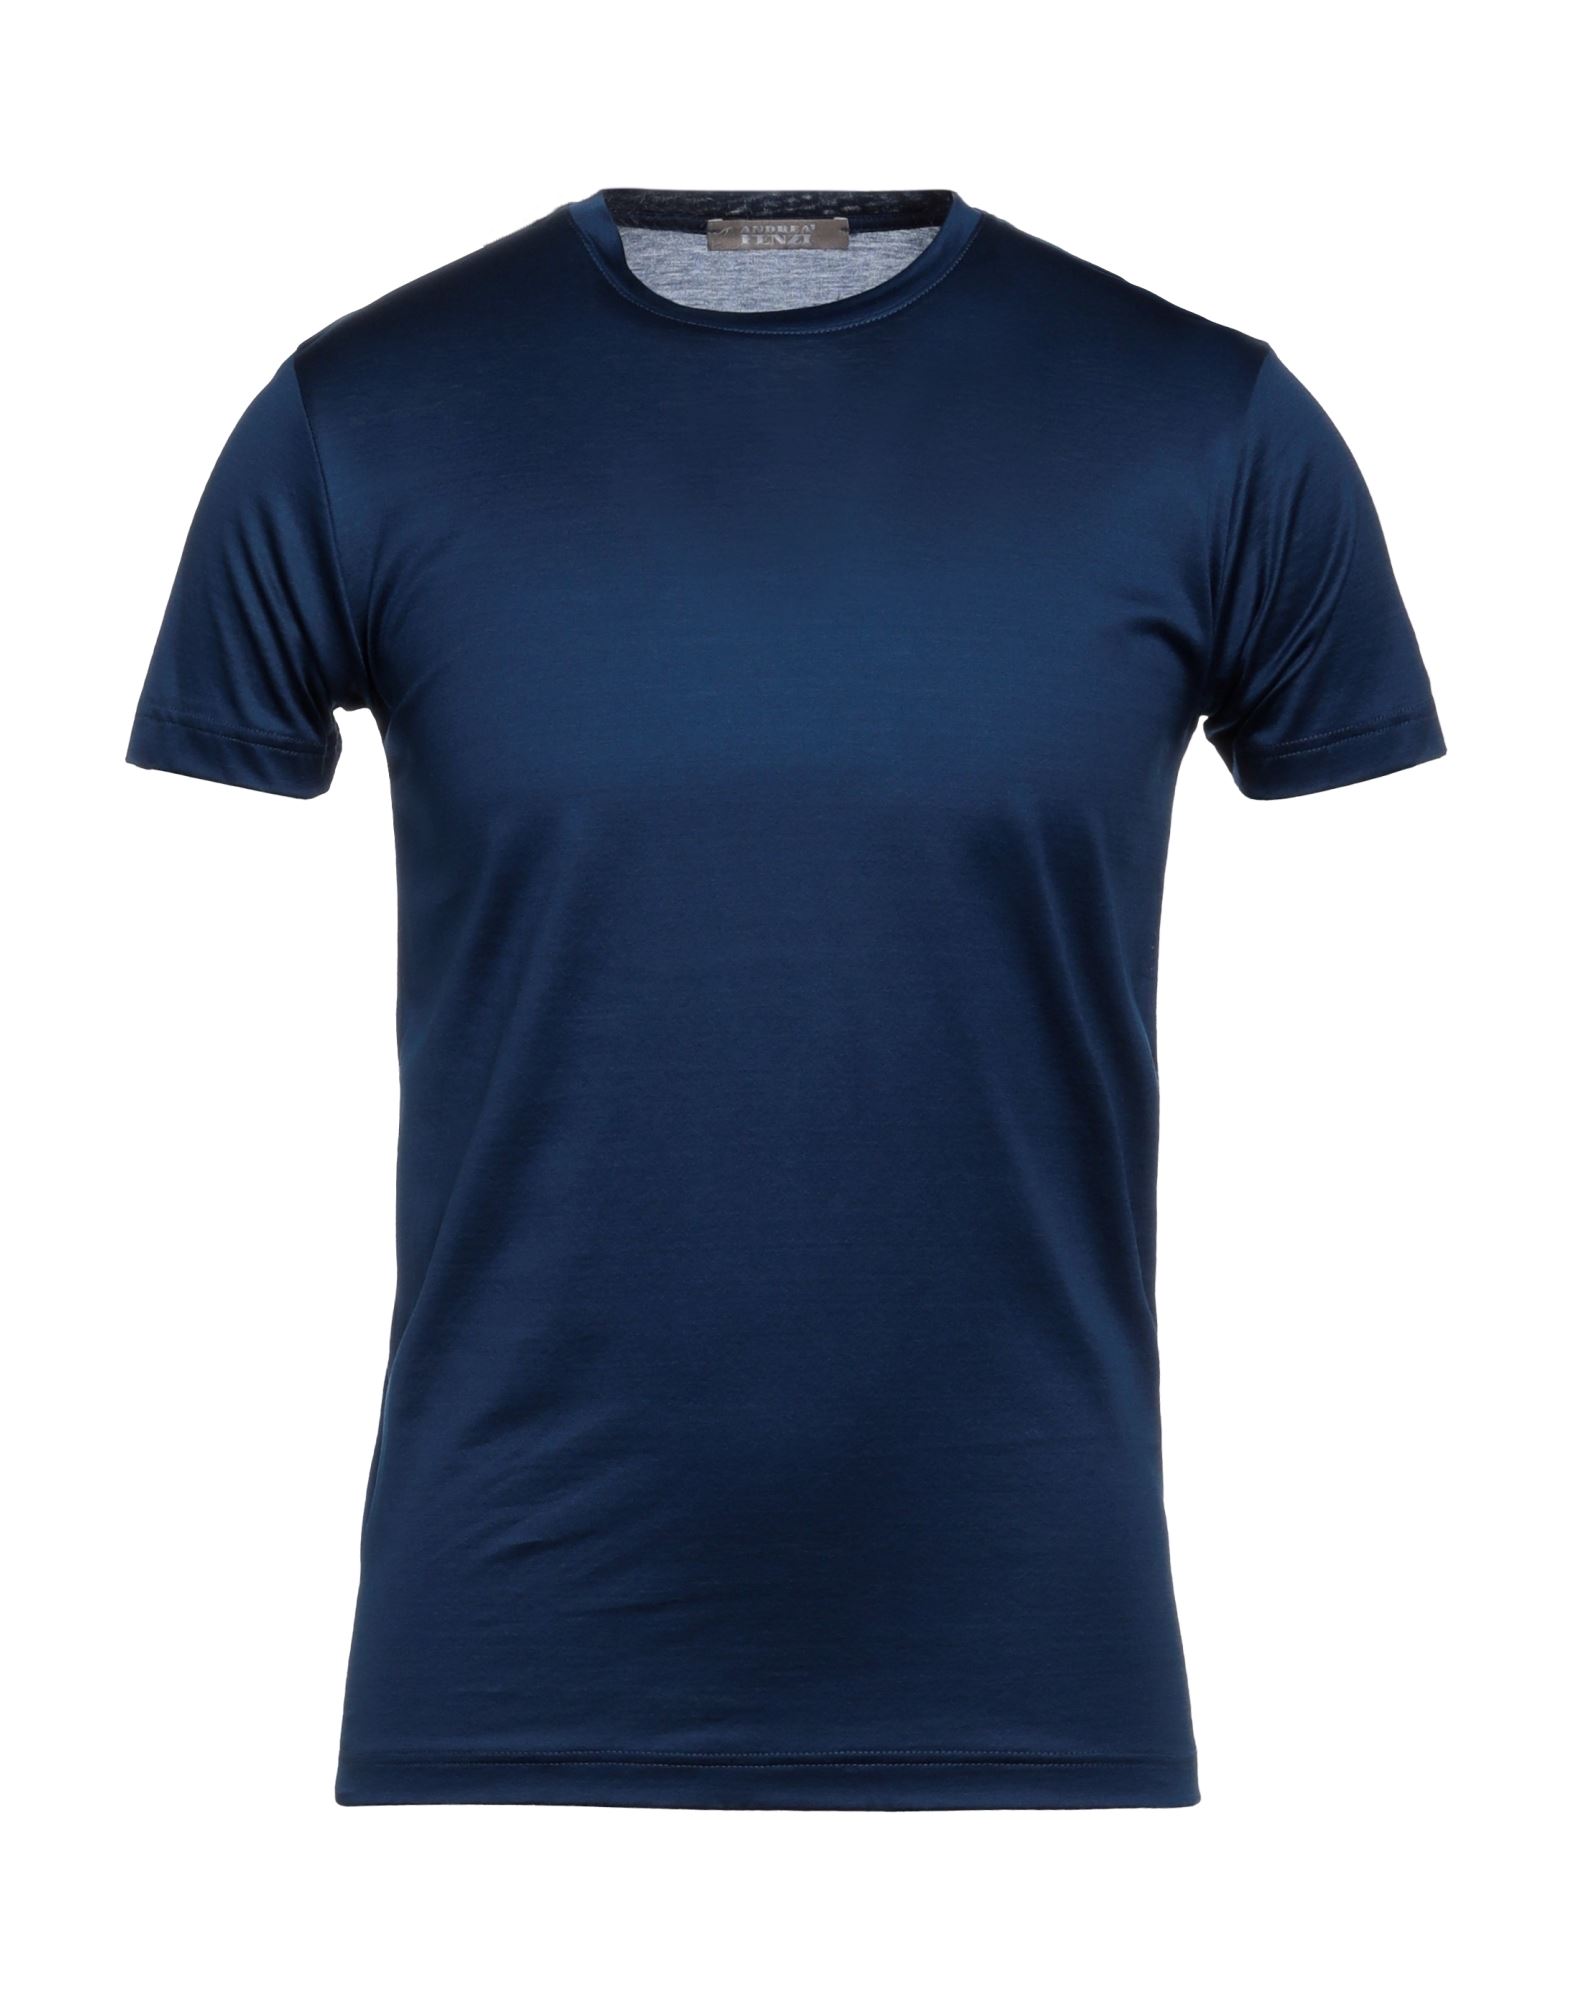 Andrea Fenzi T-shirts In Navy Blue